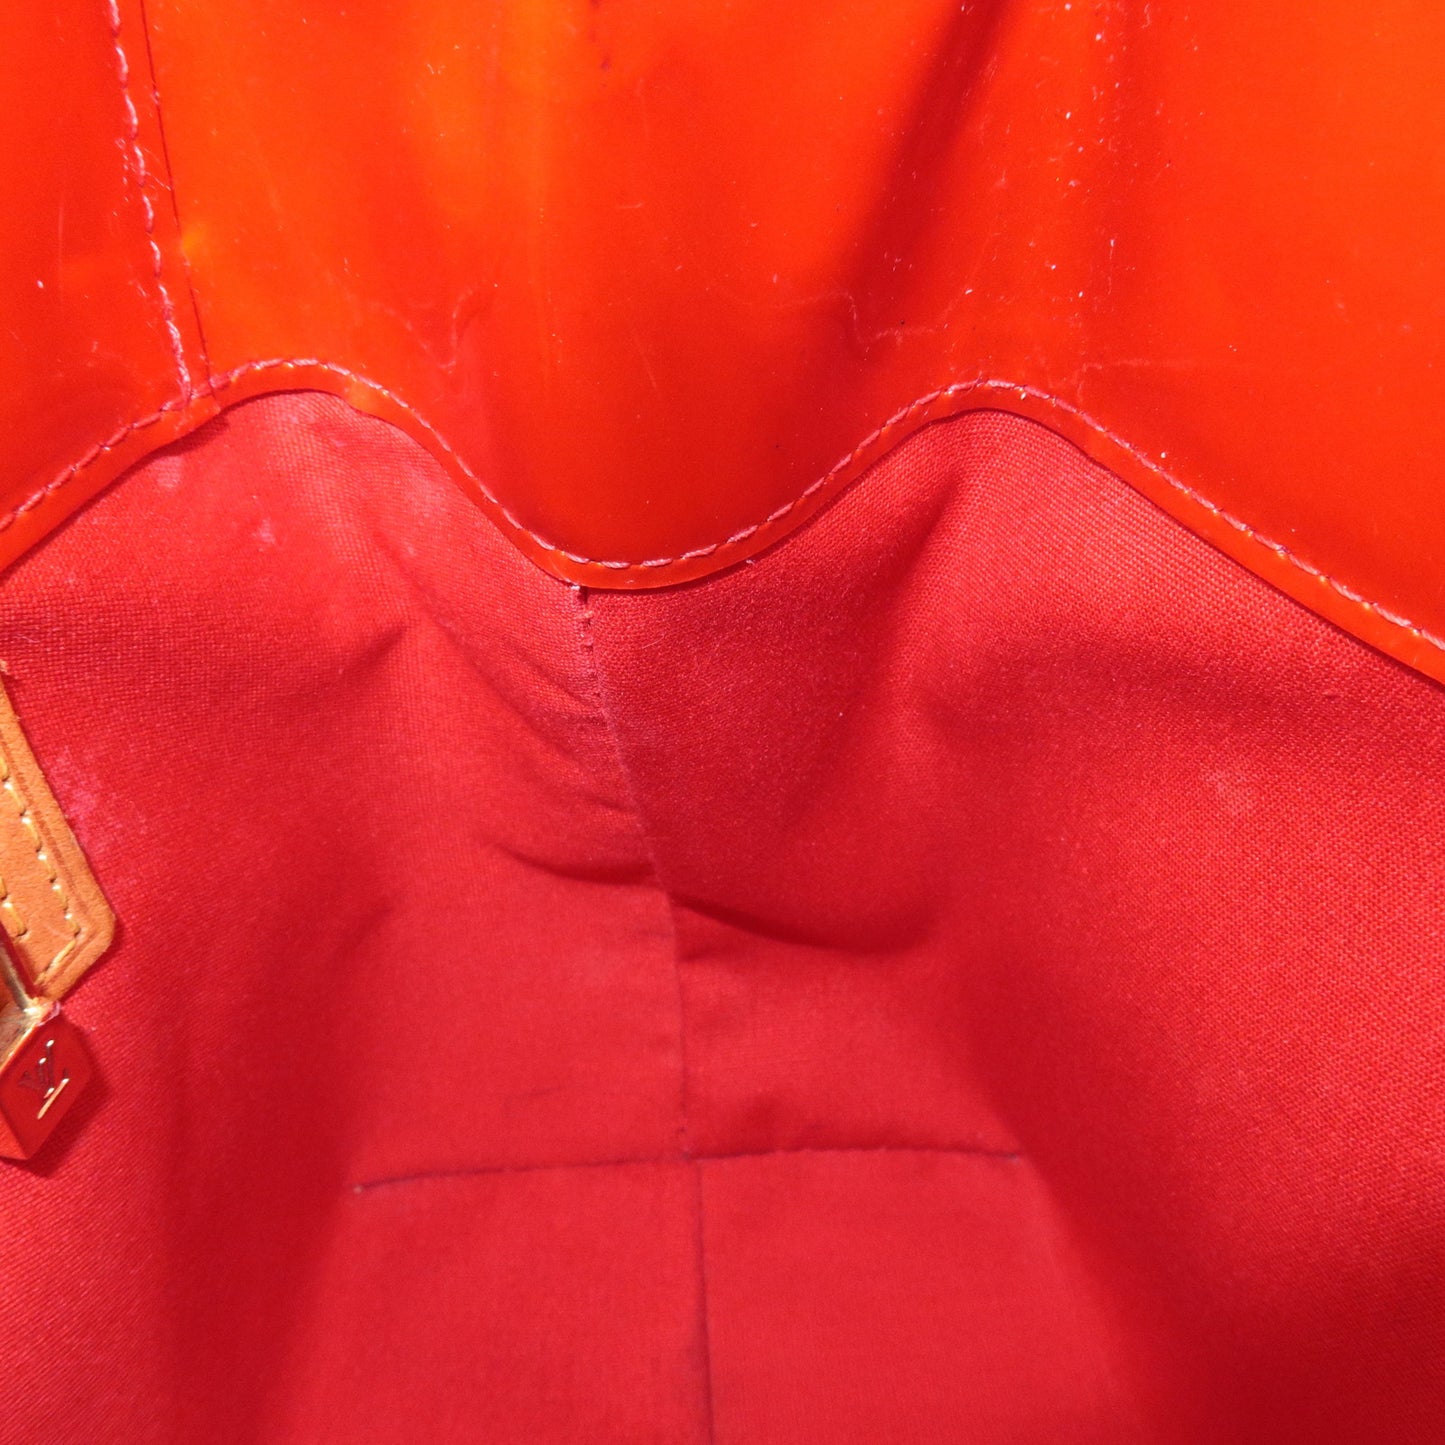 Louis Vuitton Monogram Vernis Lead PM Hand Bag Rouge M91990